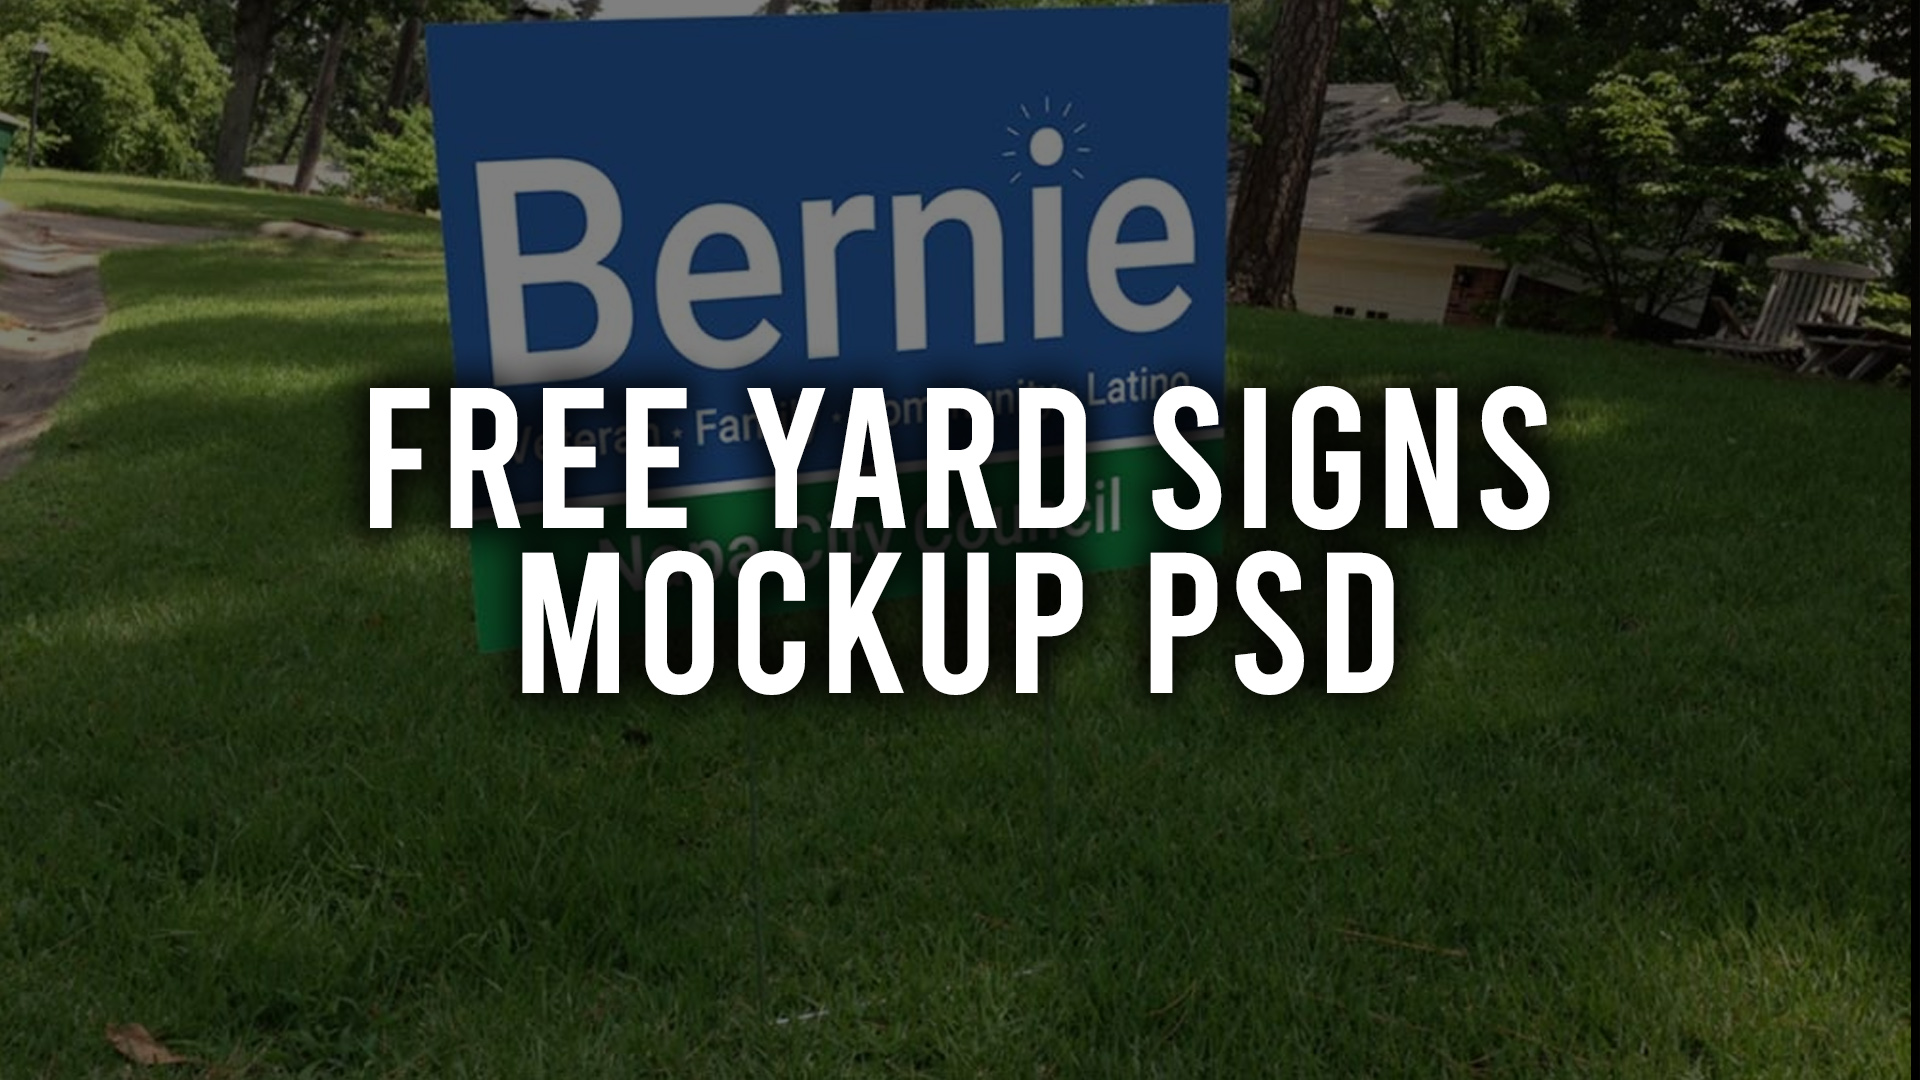 Free Yard Signs Mockup PSD